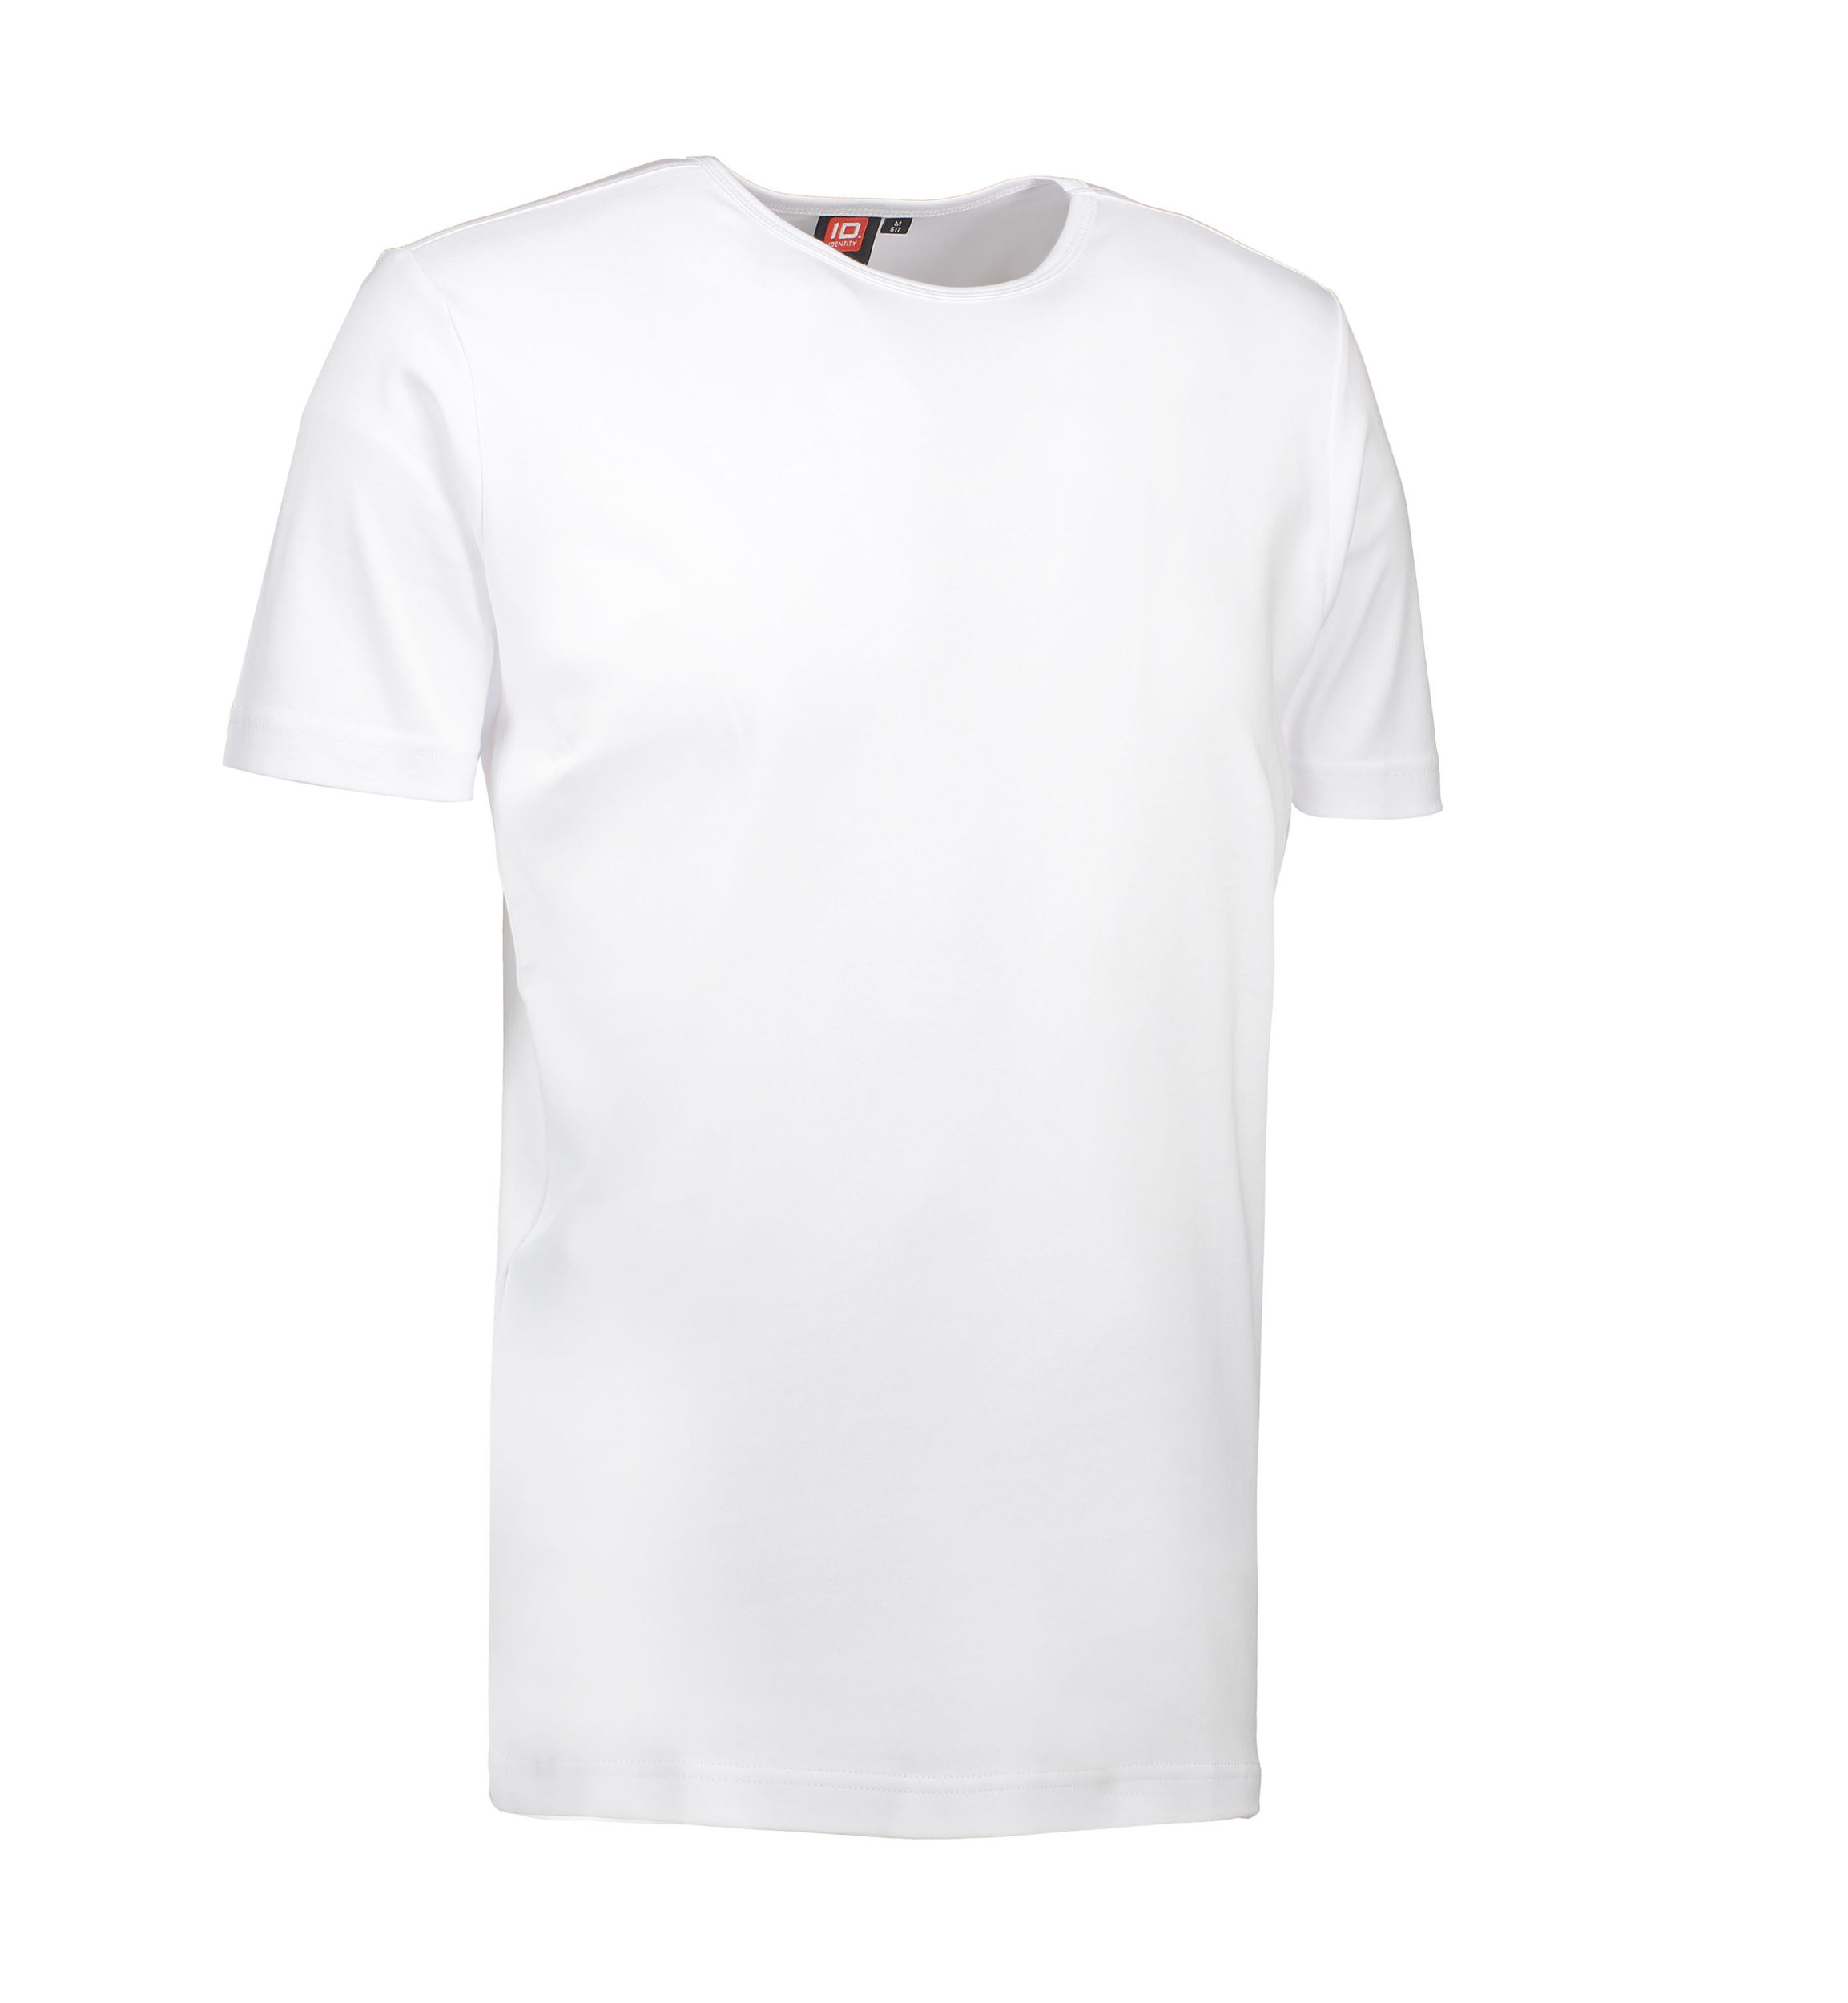 Billede af Hvid t-shirt med rund hals til mænd - 2XL hos Sygeplejebutikken.dk